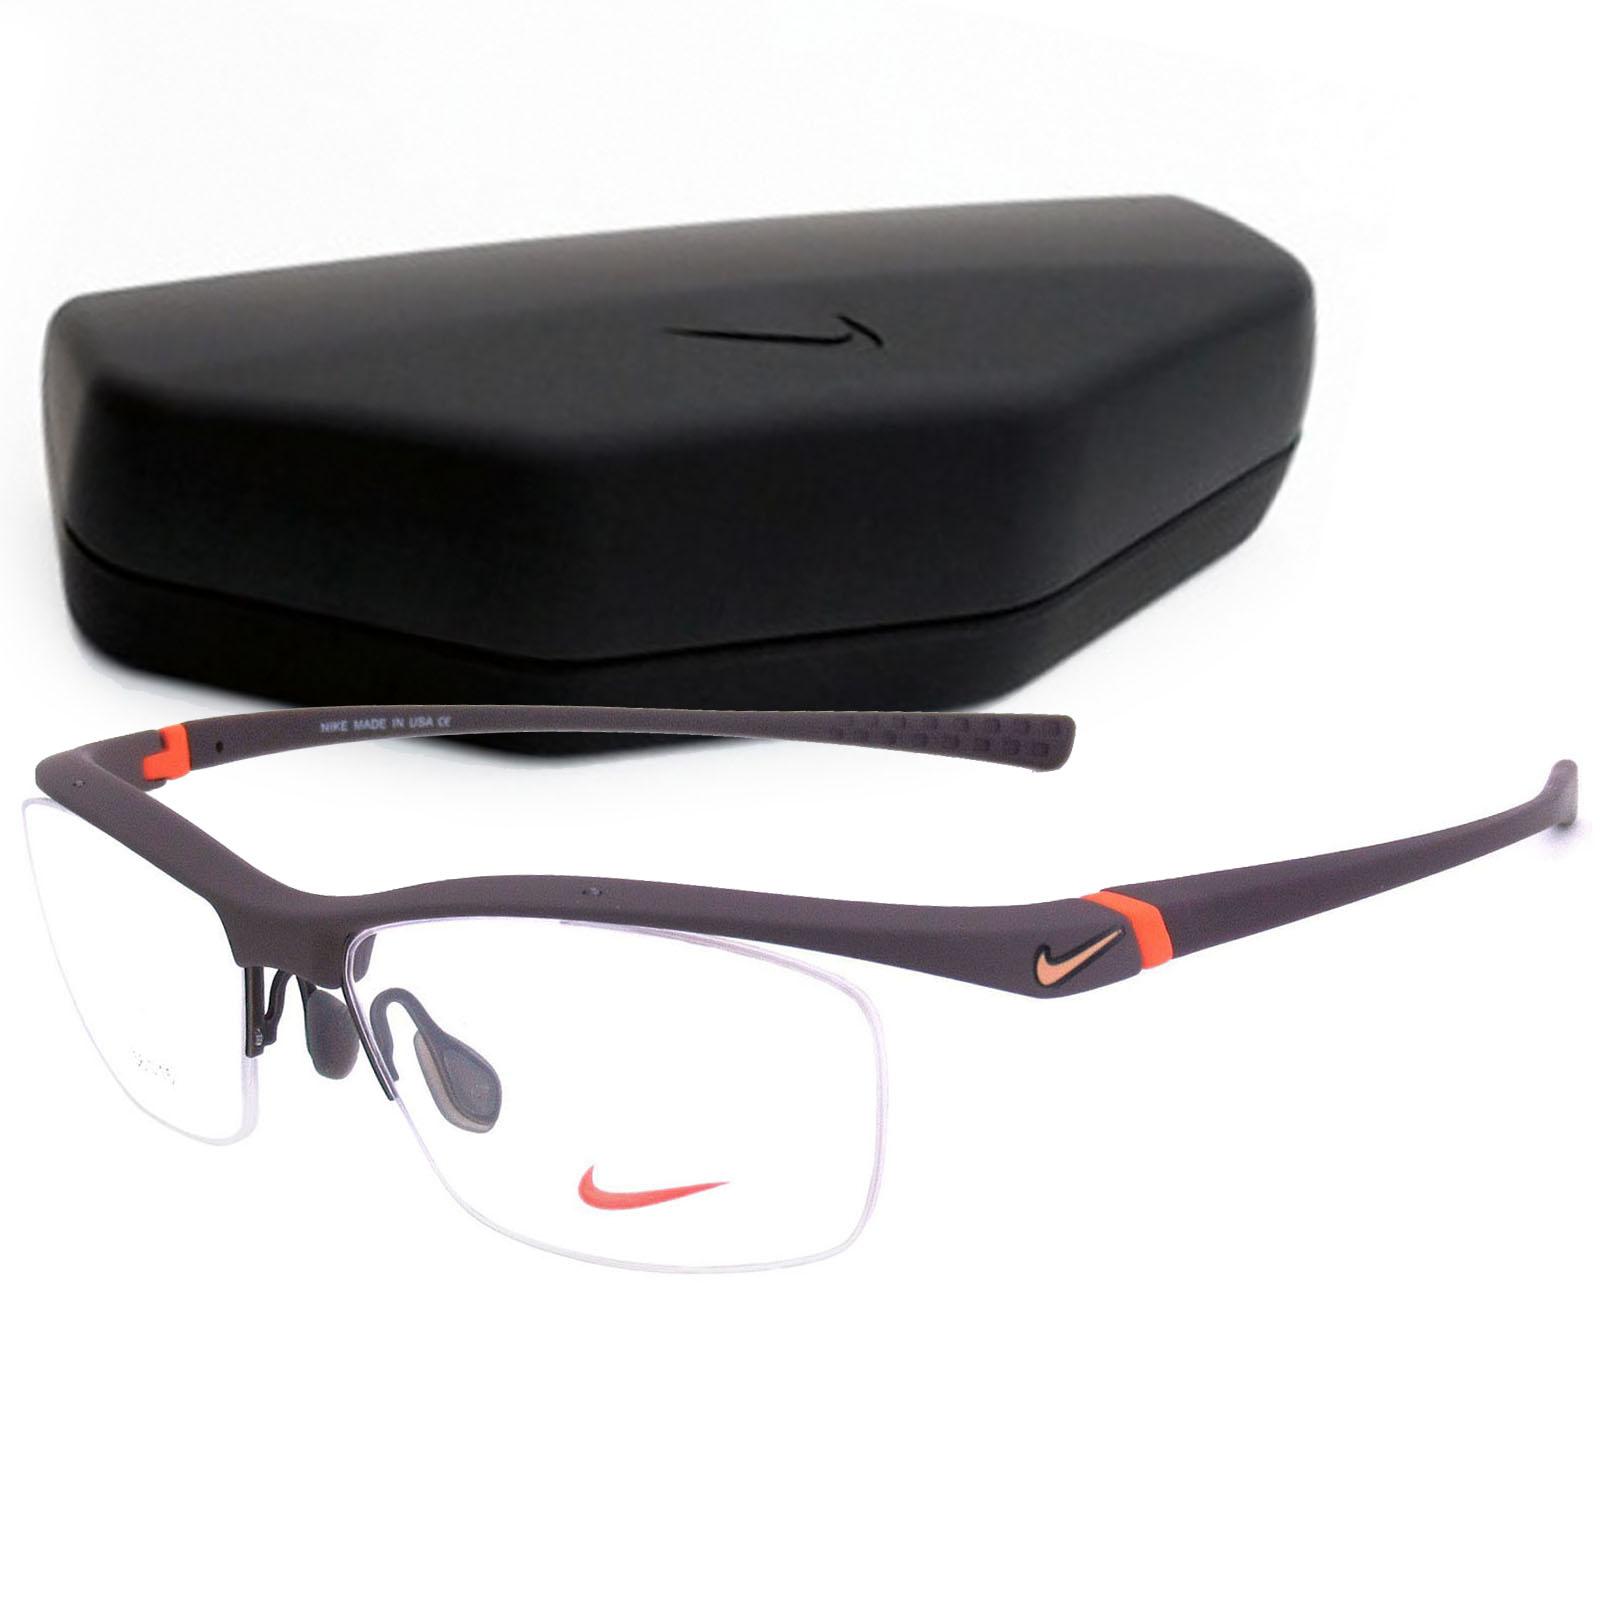 Fashion แว่นตาแฟชั่น รุ่น 7070 แว่นเซาะร่อง แว่นตา ทรงสปอร์ต กรอบแว่นตา(ขาข้อต่อ) วัสดุ NEW PC สำหรับตัดเลนส์